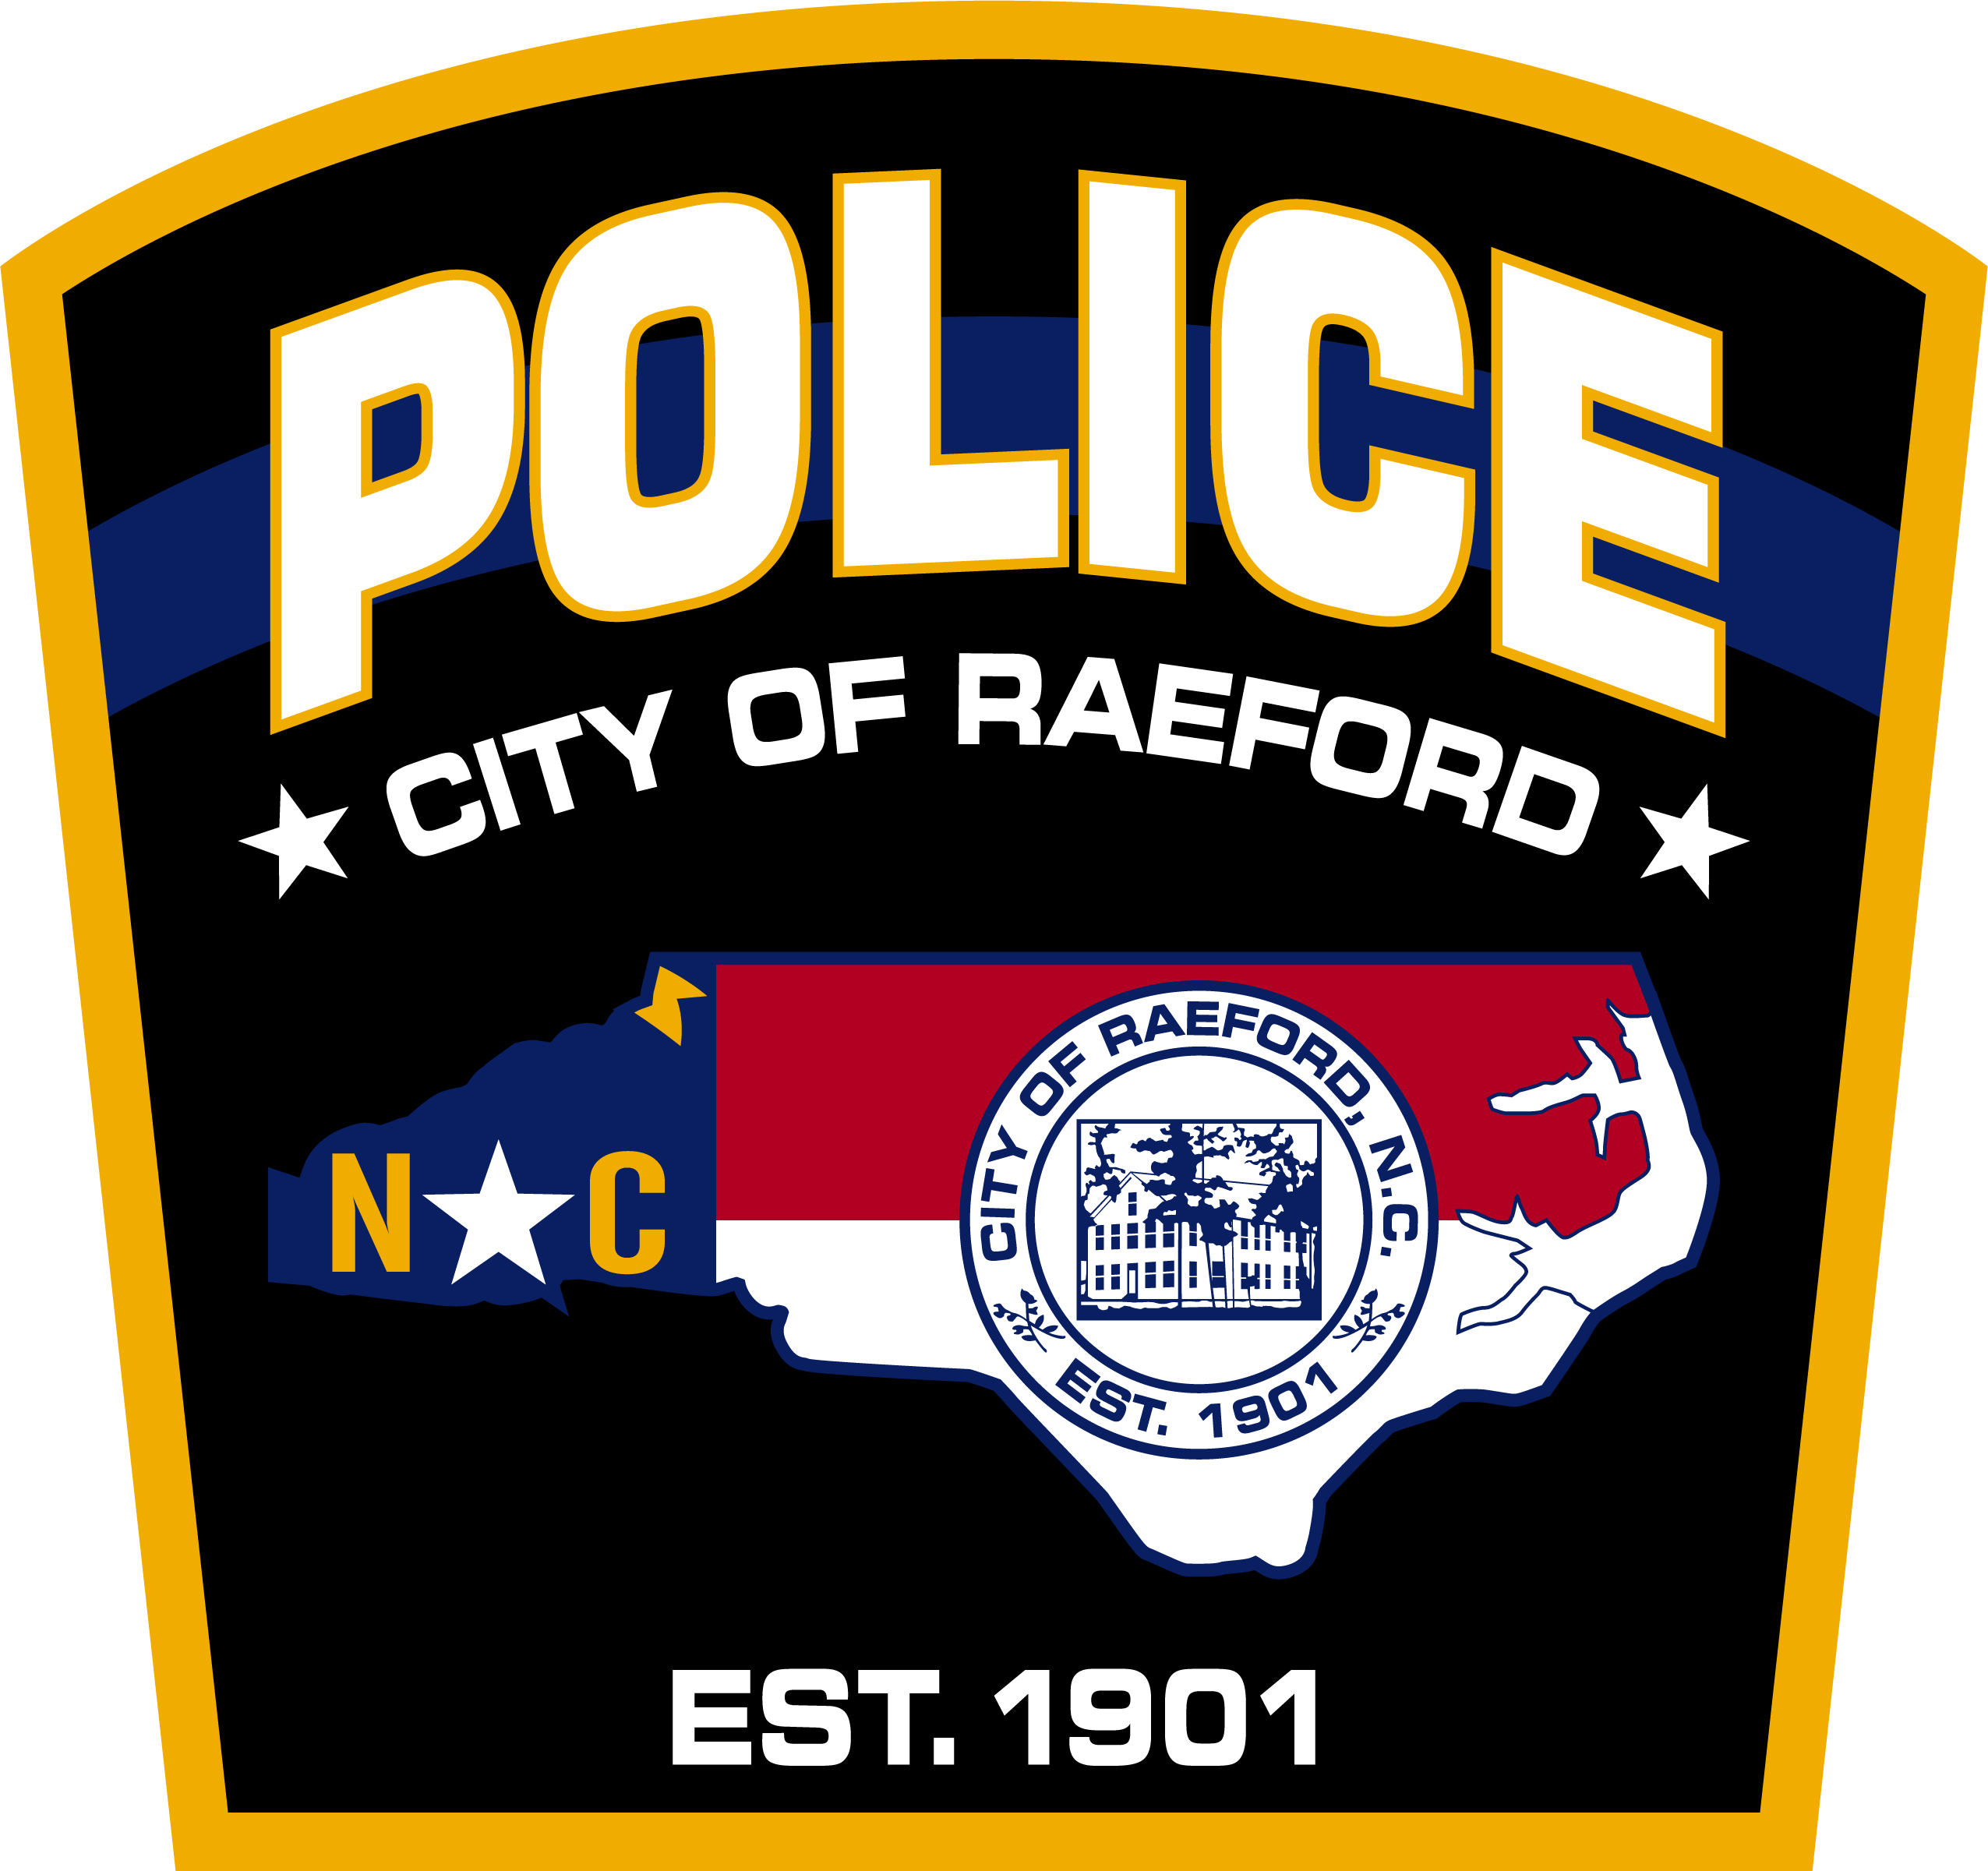 Raeford, NC Police Jobs - Certified | PoliceApp